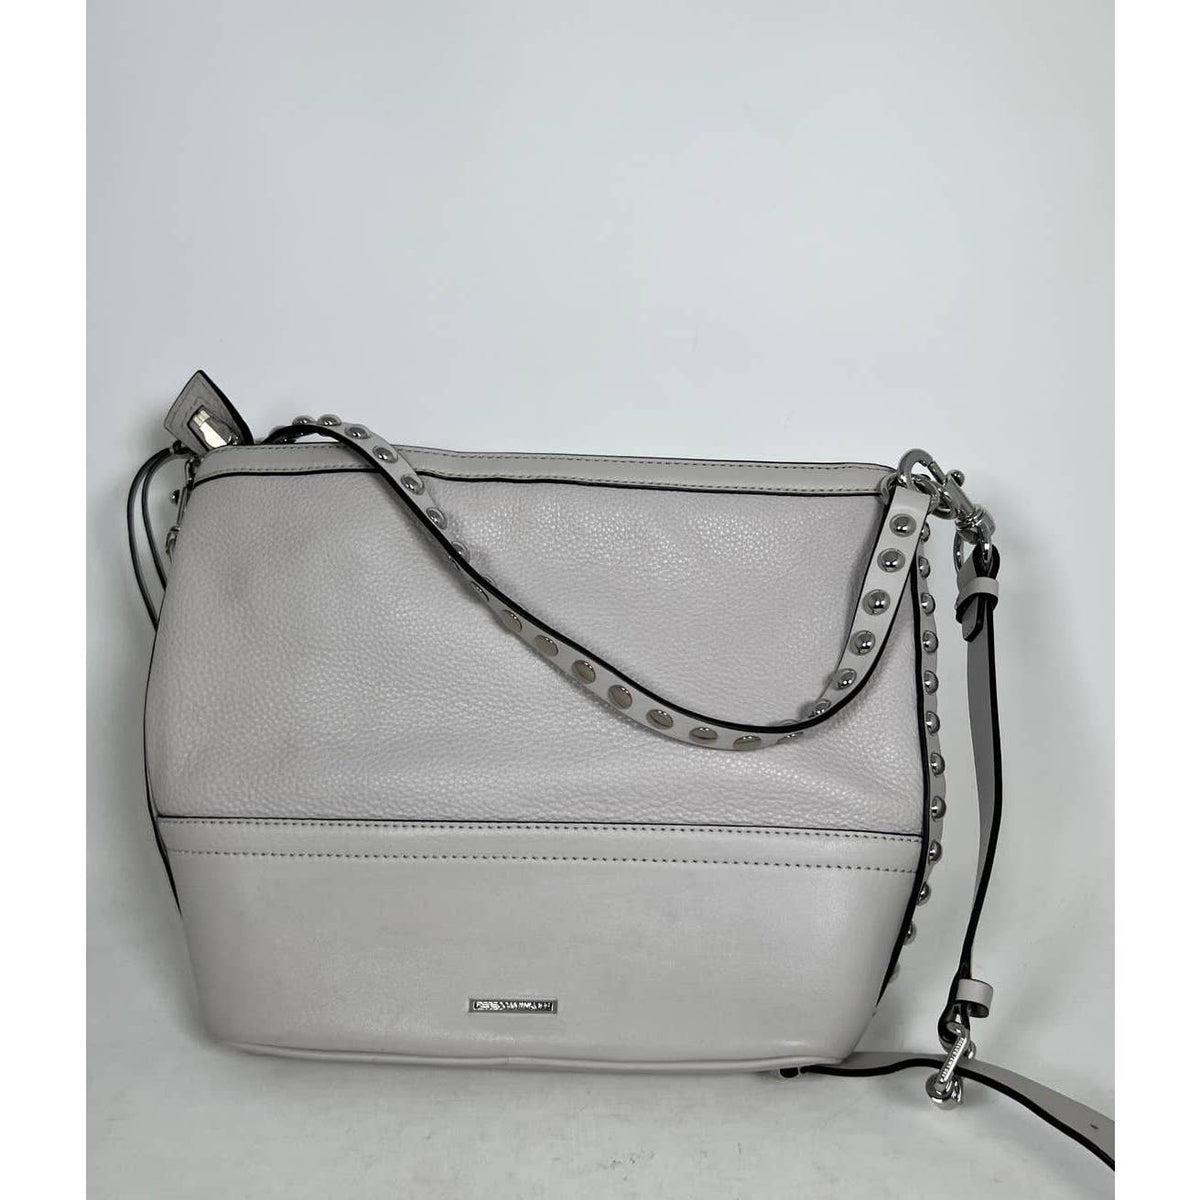 Rebecca Minkoff Blythe Studded Textured Leather Shoulder Bag Grey